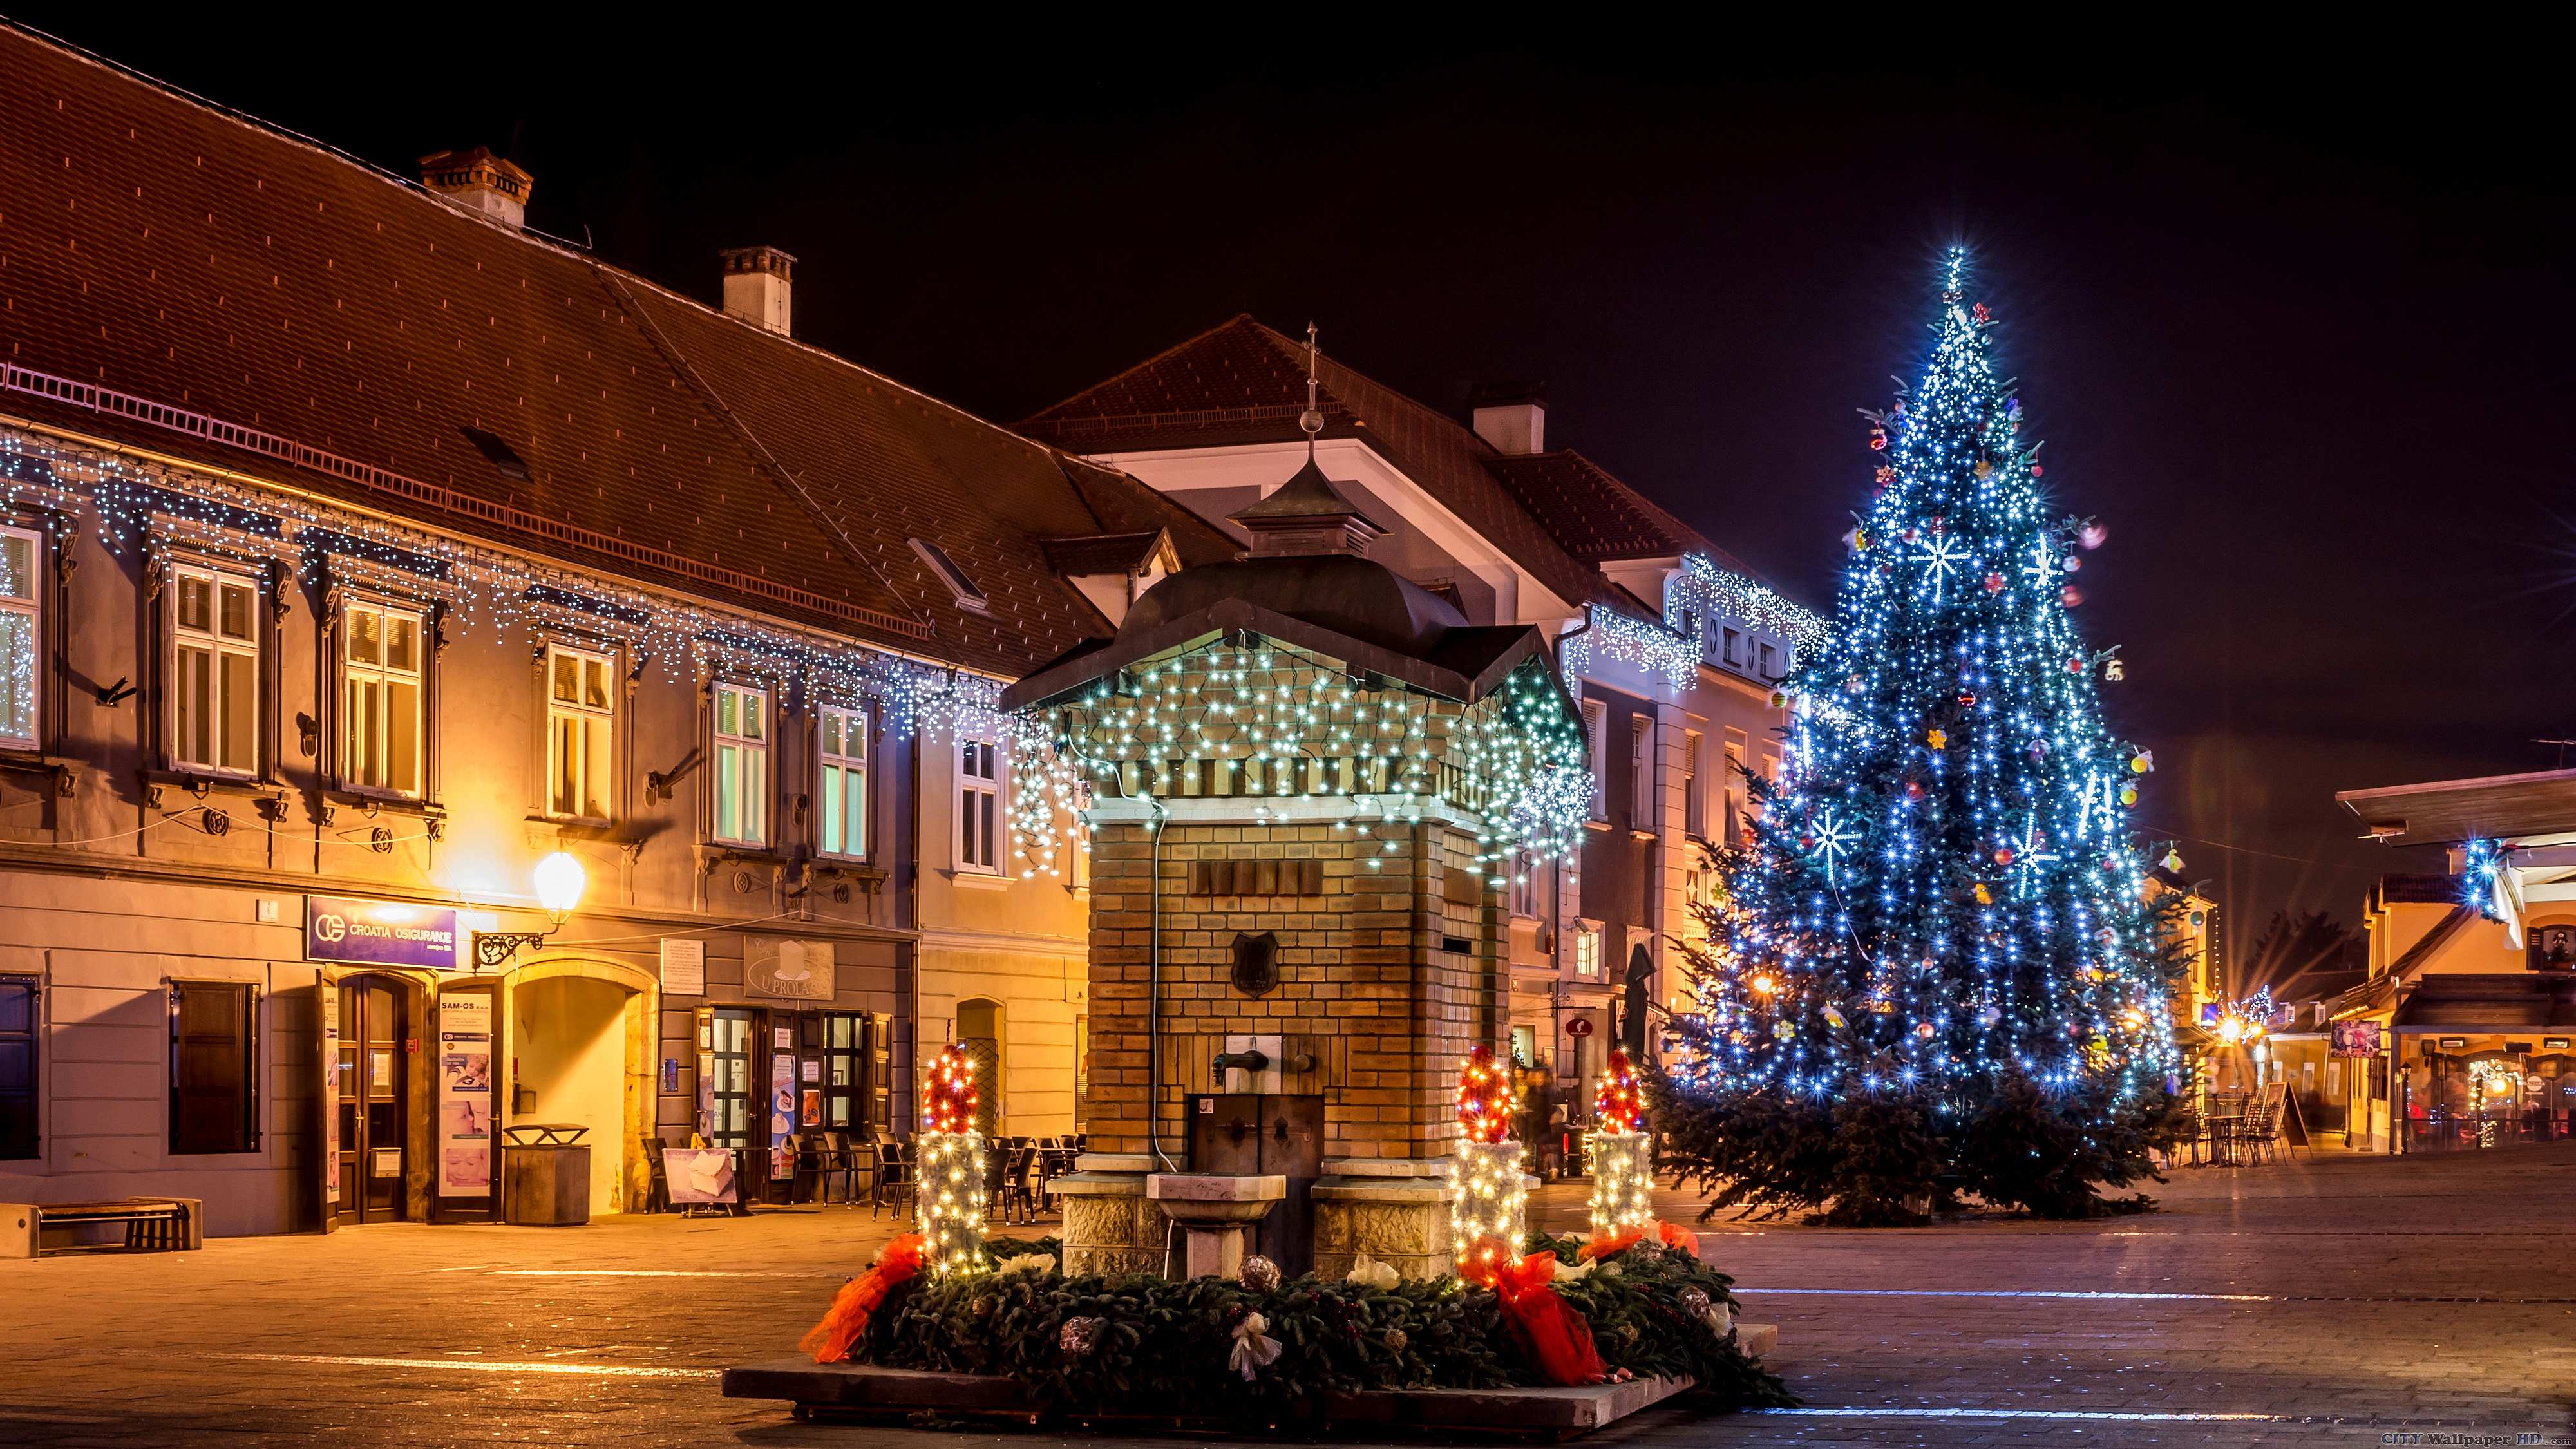 Immagini Natalizie In Hd.Carta Da Parati Di Natale In Croazia Hd Immagini Di Citta Per Il Telefono Zagabria Croazia Notte